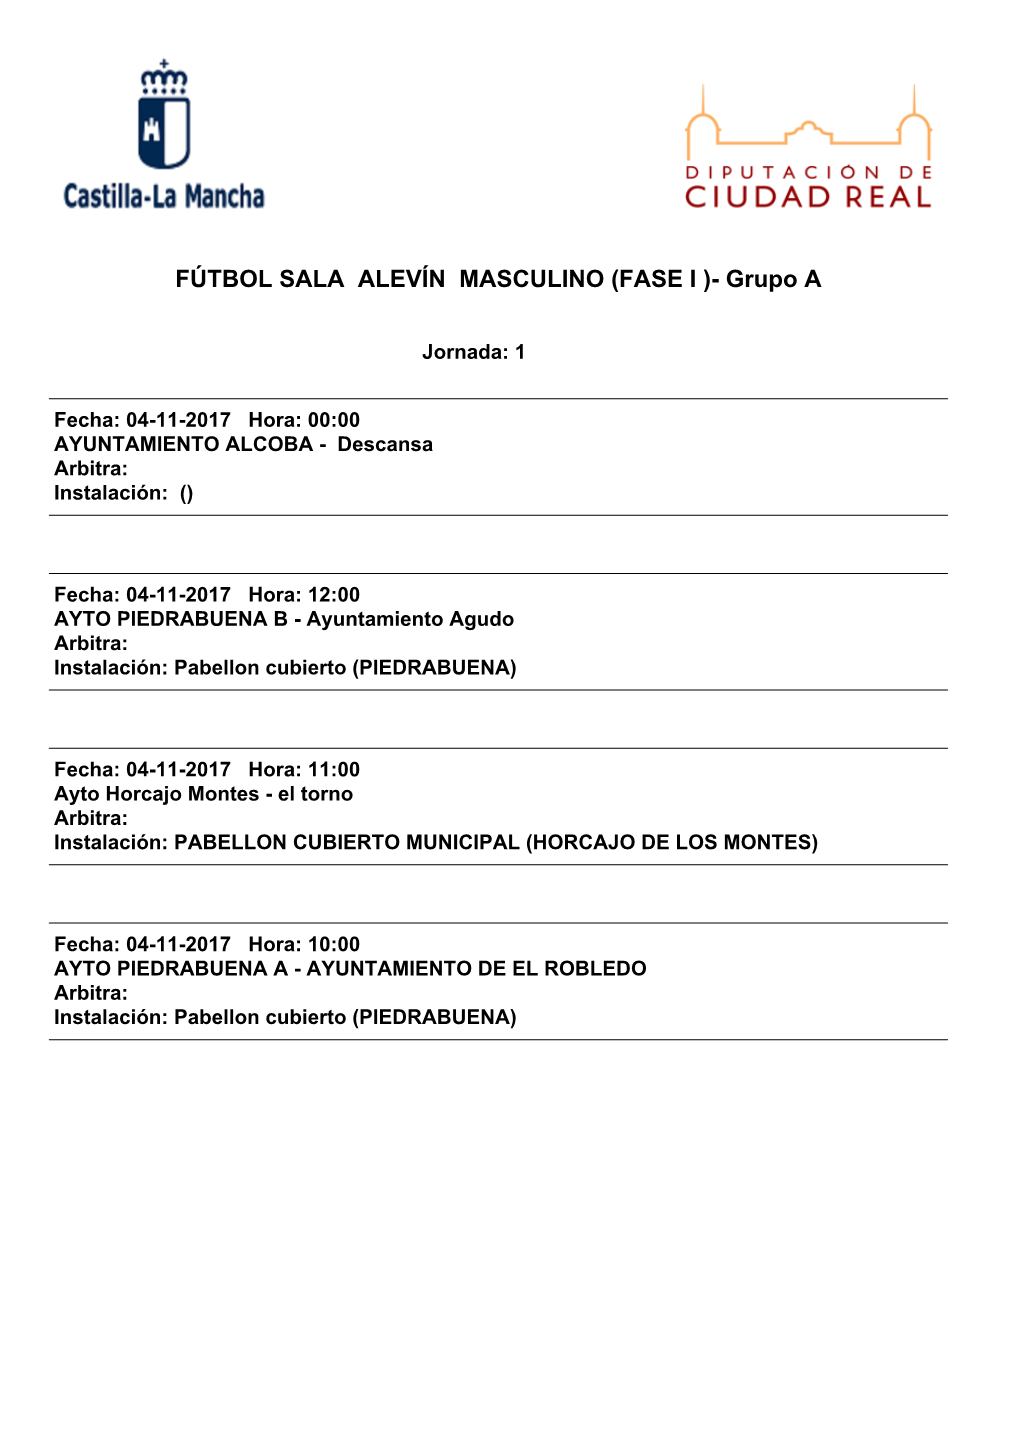 FÚTBOL SALA ALEVÍN MASCULINO (FASE I )- Grupo A